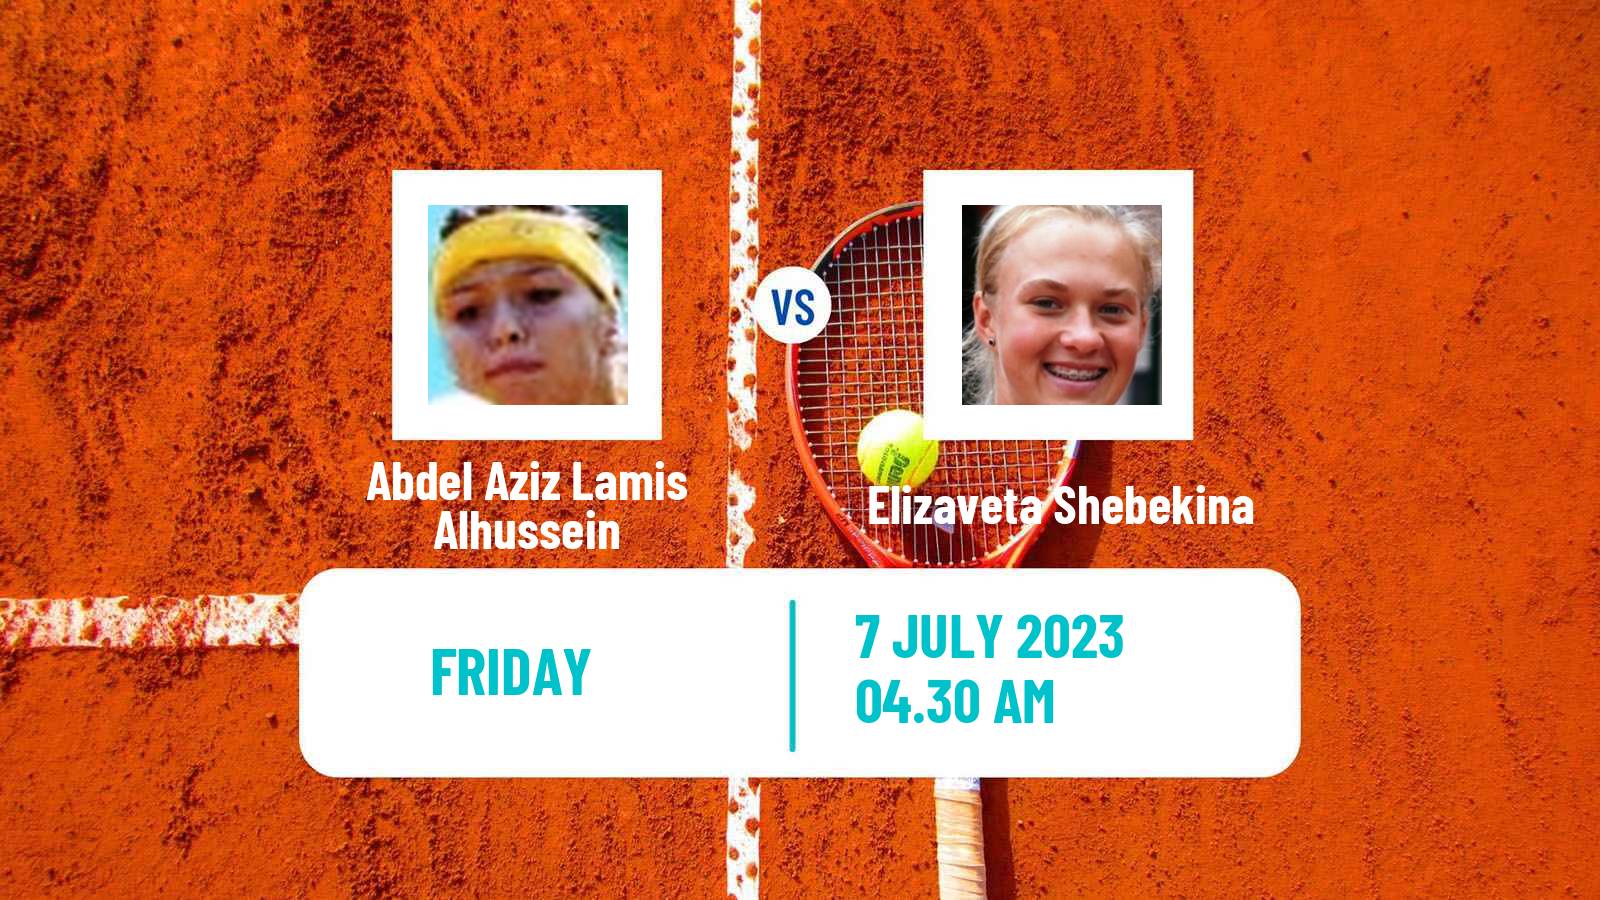 Tennis ITF W15 Monastir 22 Women Abdel Aziz Lamis Alhussein - Elizaveta Shebekina